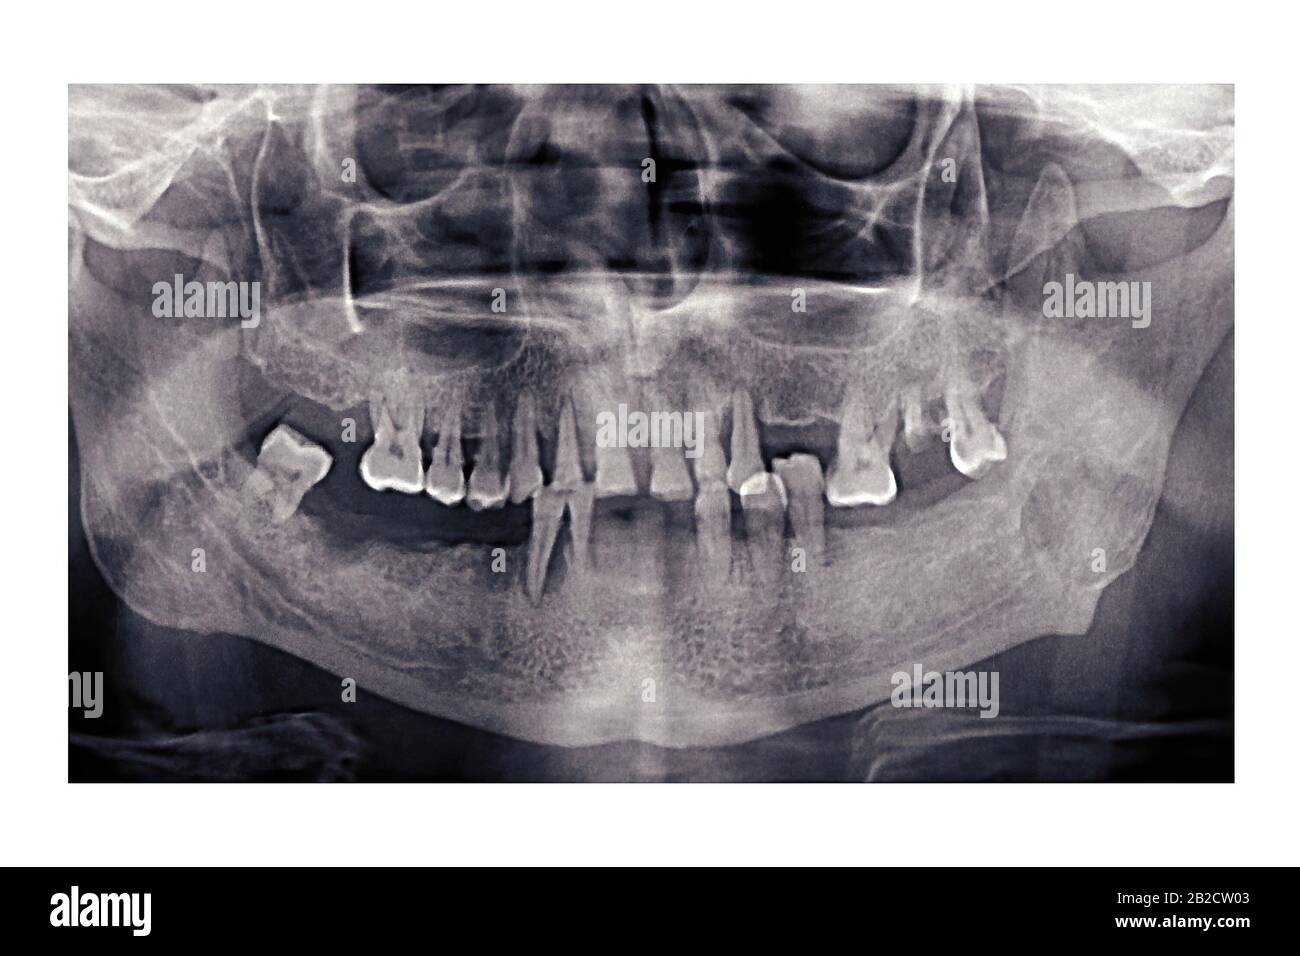 Raggi X dentali panoramici di una persona anziana. I denti difettosi sono caduti fuori. Istantanea della mascella del pensionato. Orthopantomogramma Foto Stock